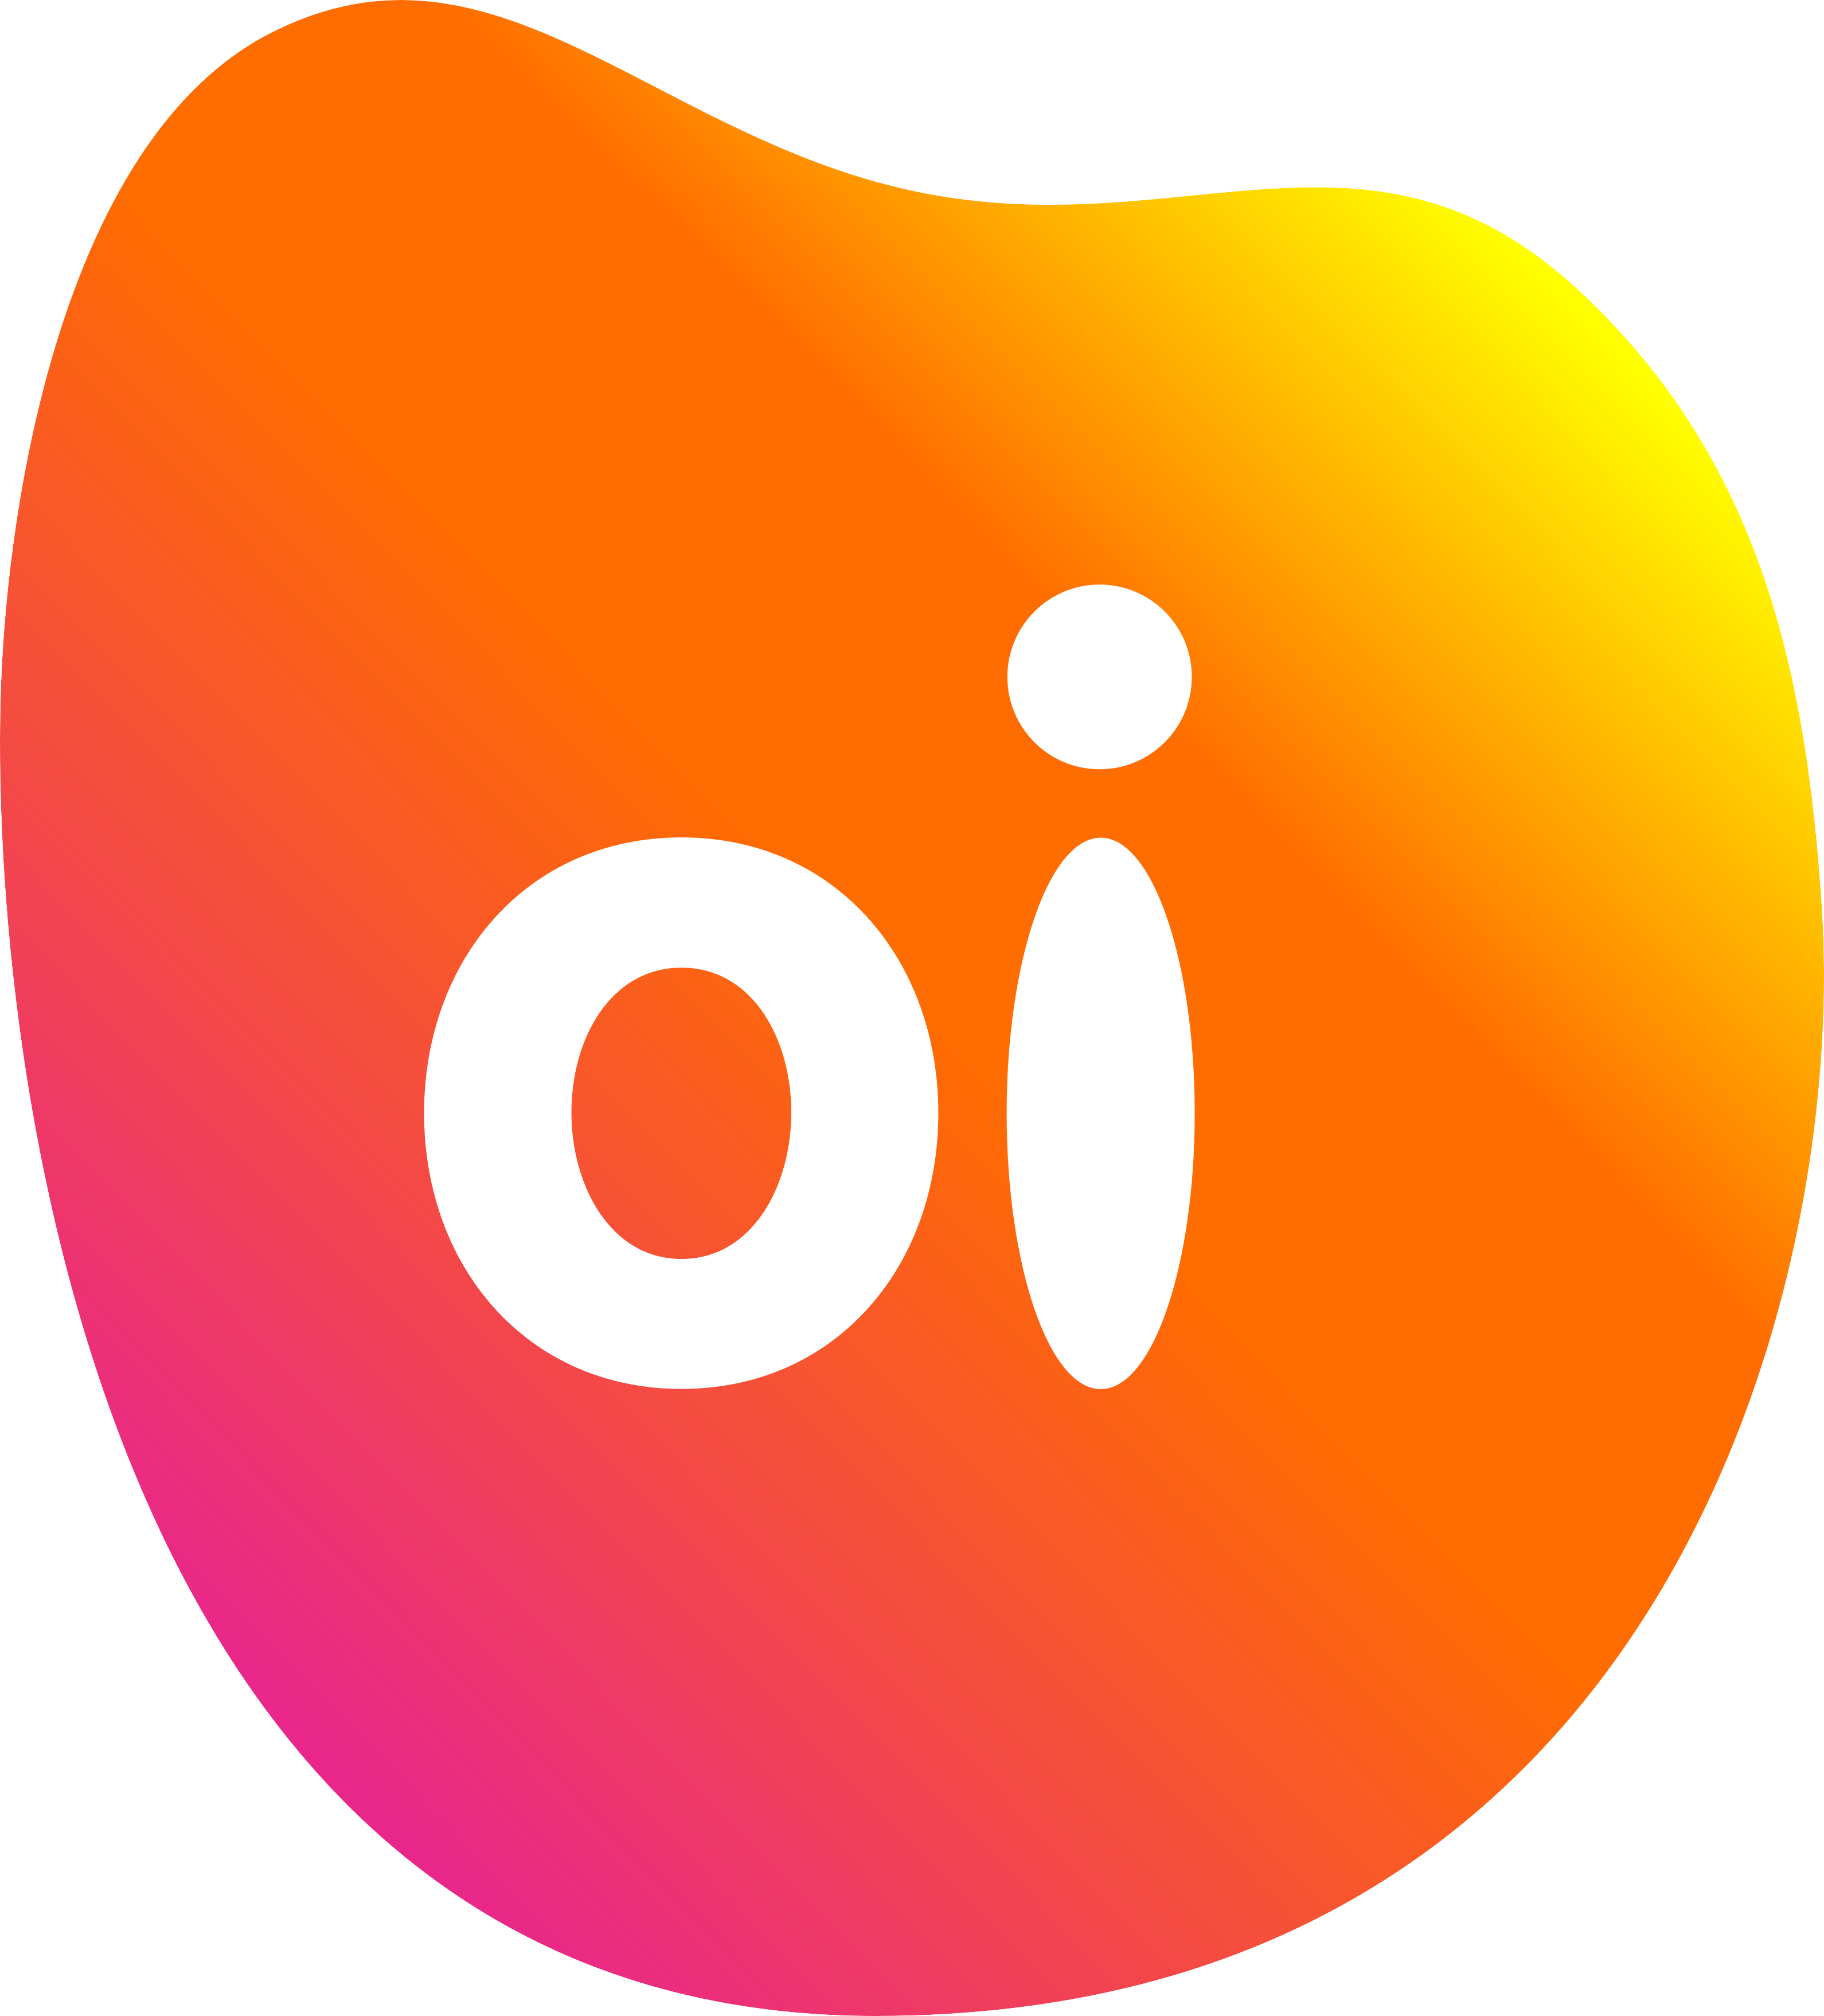 Oi Telecom